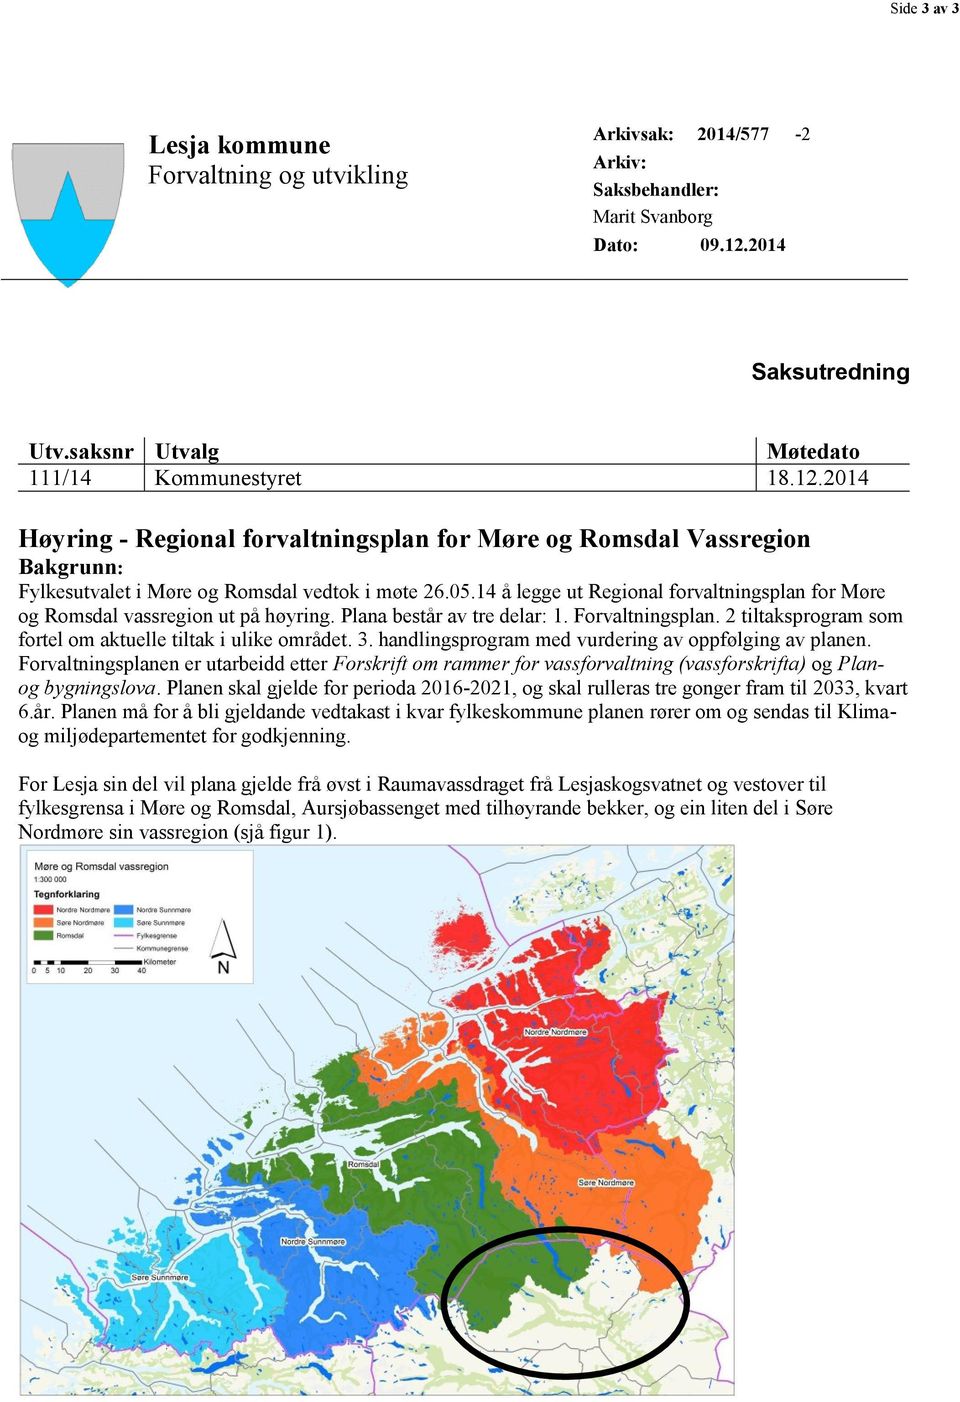 2014 Høyring - Regional forvaltningsplan for Møre og Romsdal Vassregion Bakgrunn: Fylkesutvalet i Møre og Romsdal vedtok i møte 26.05.